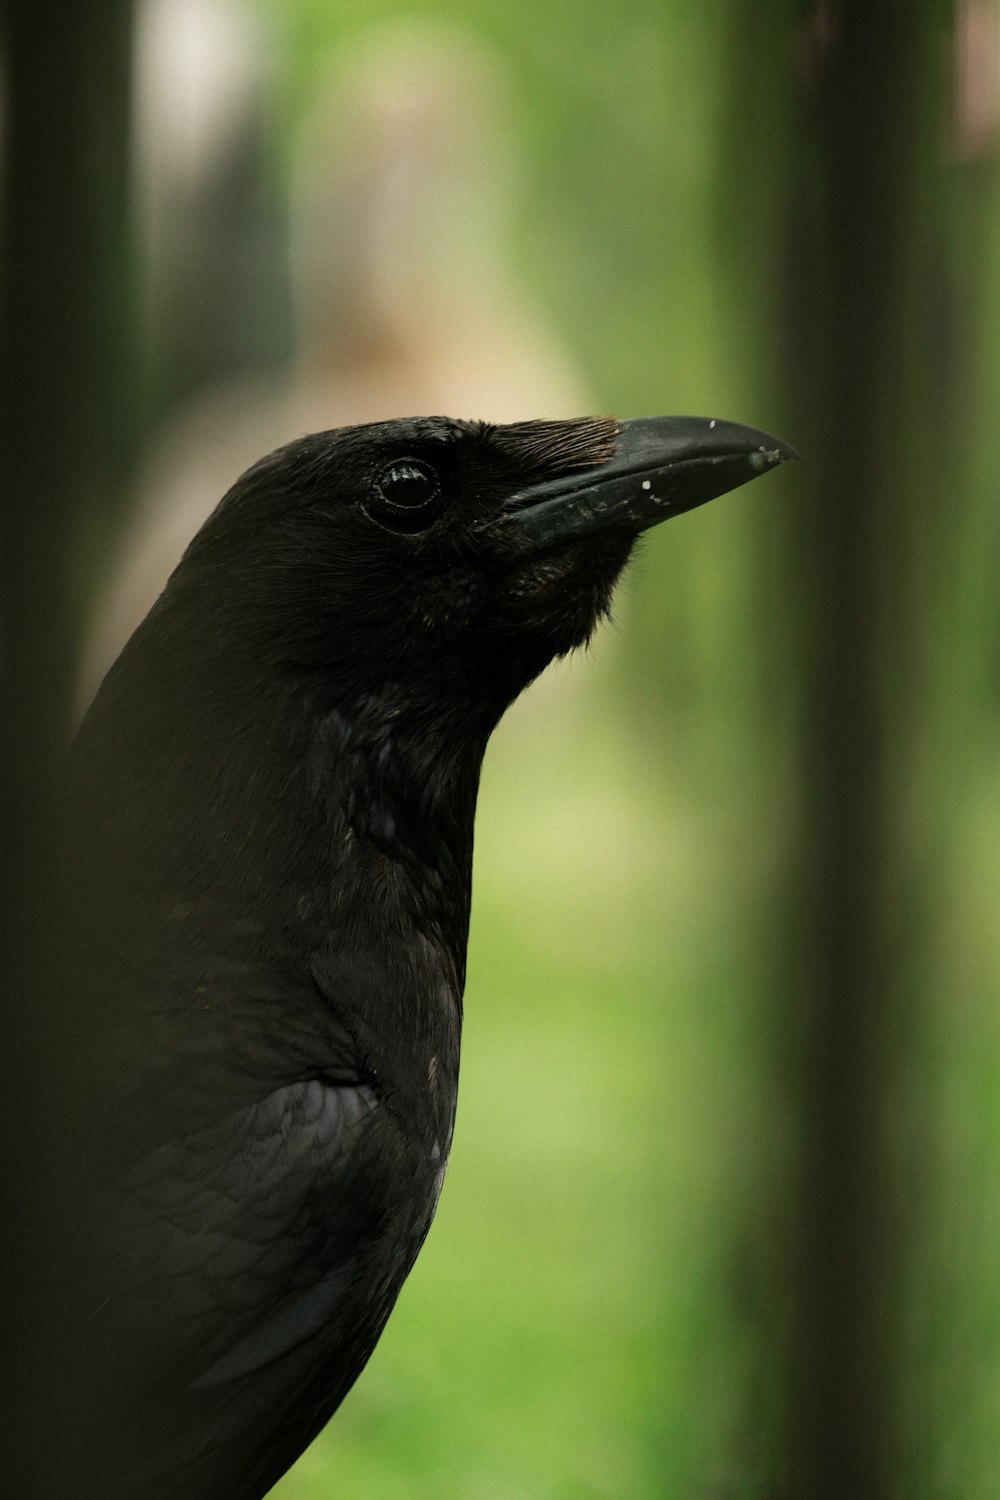 black crow in tilt shift lens